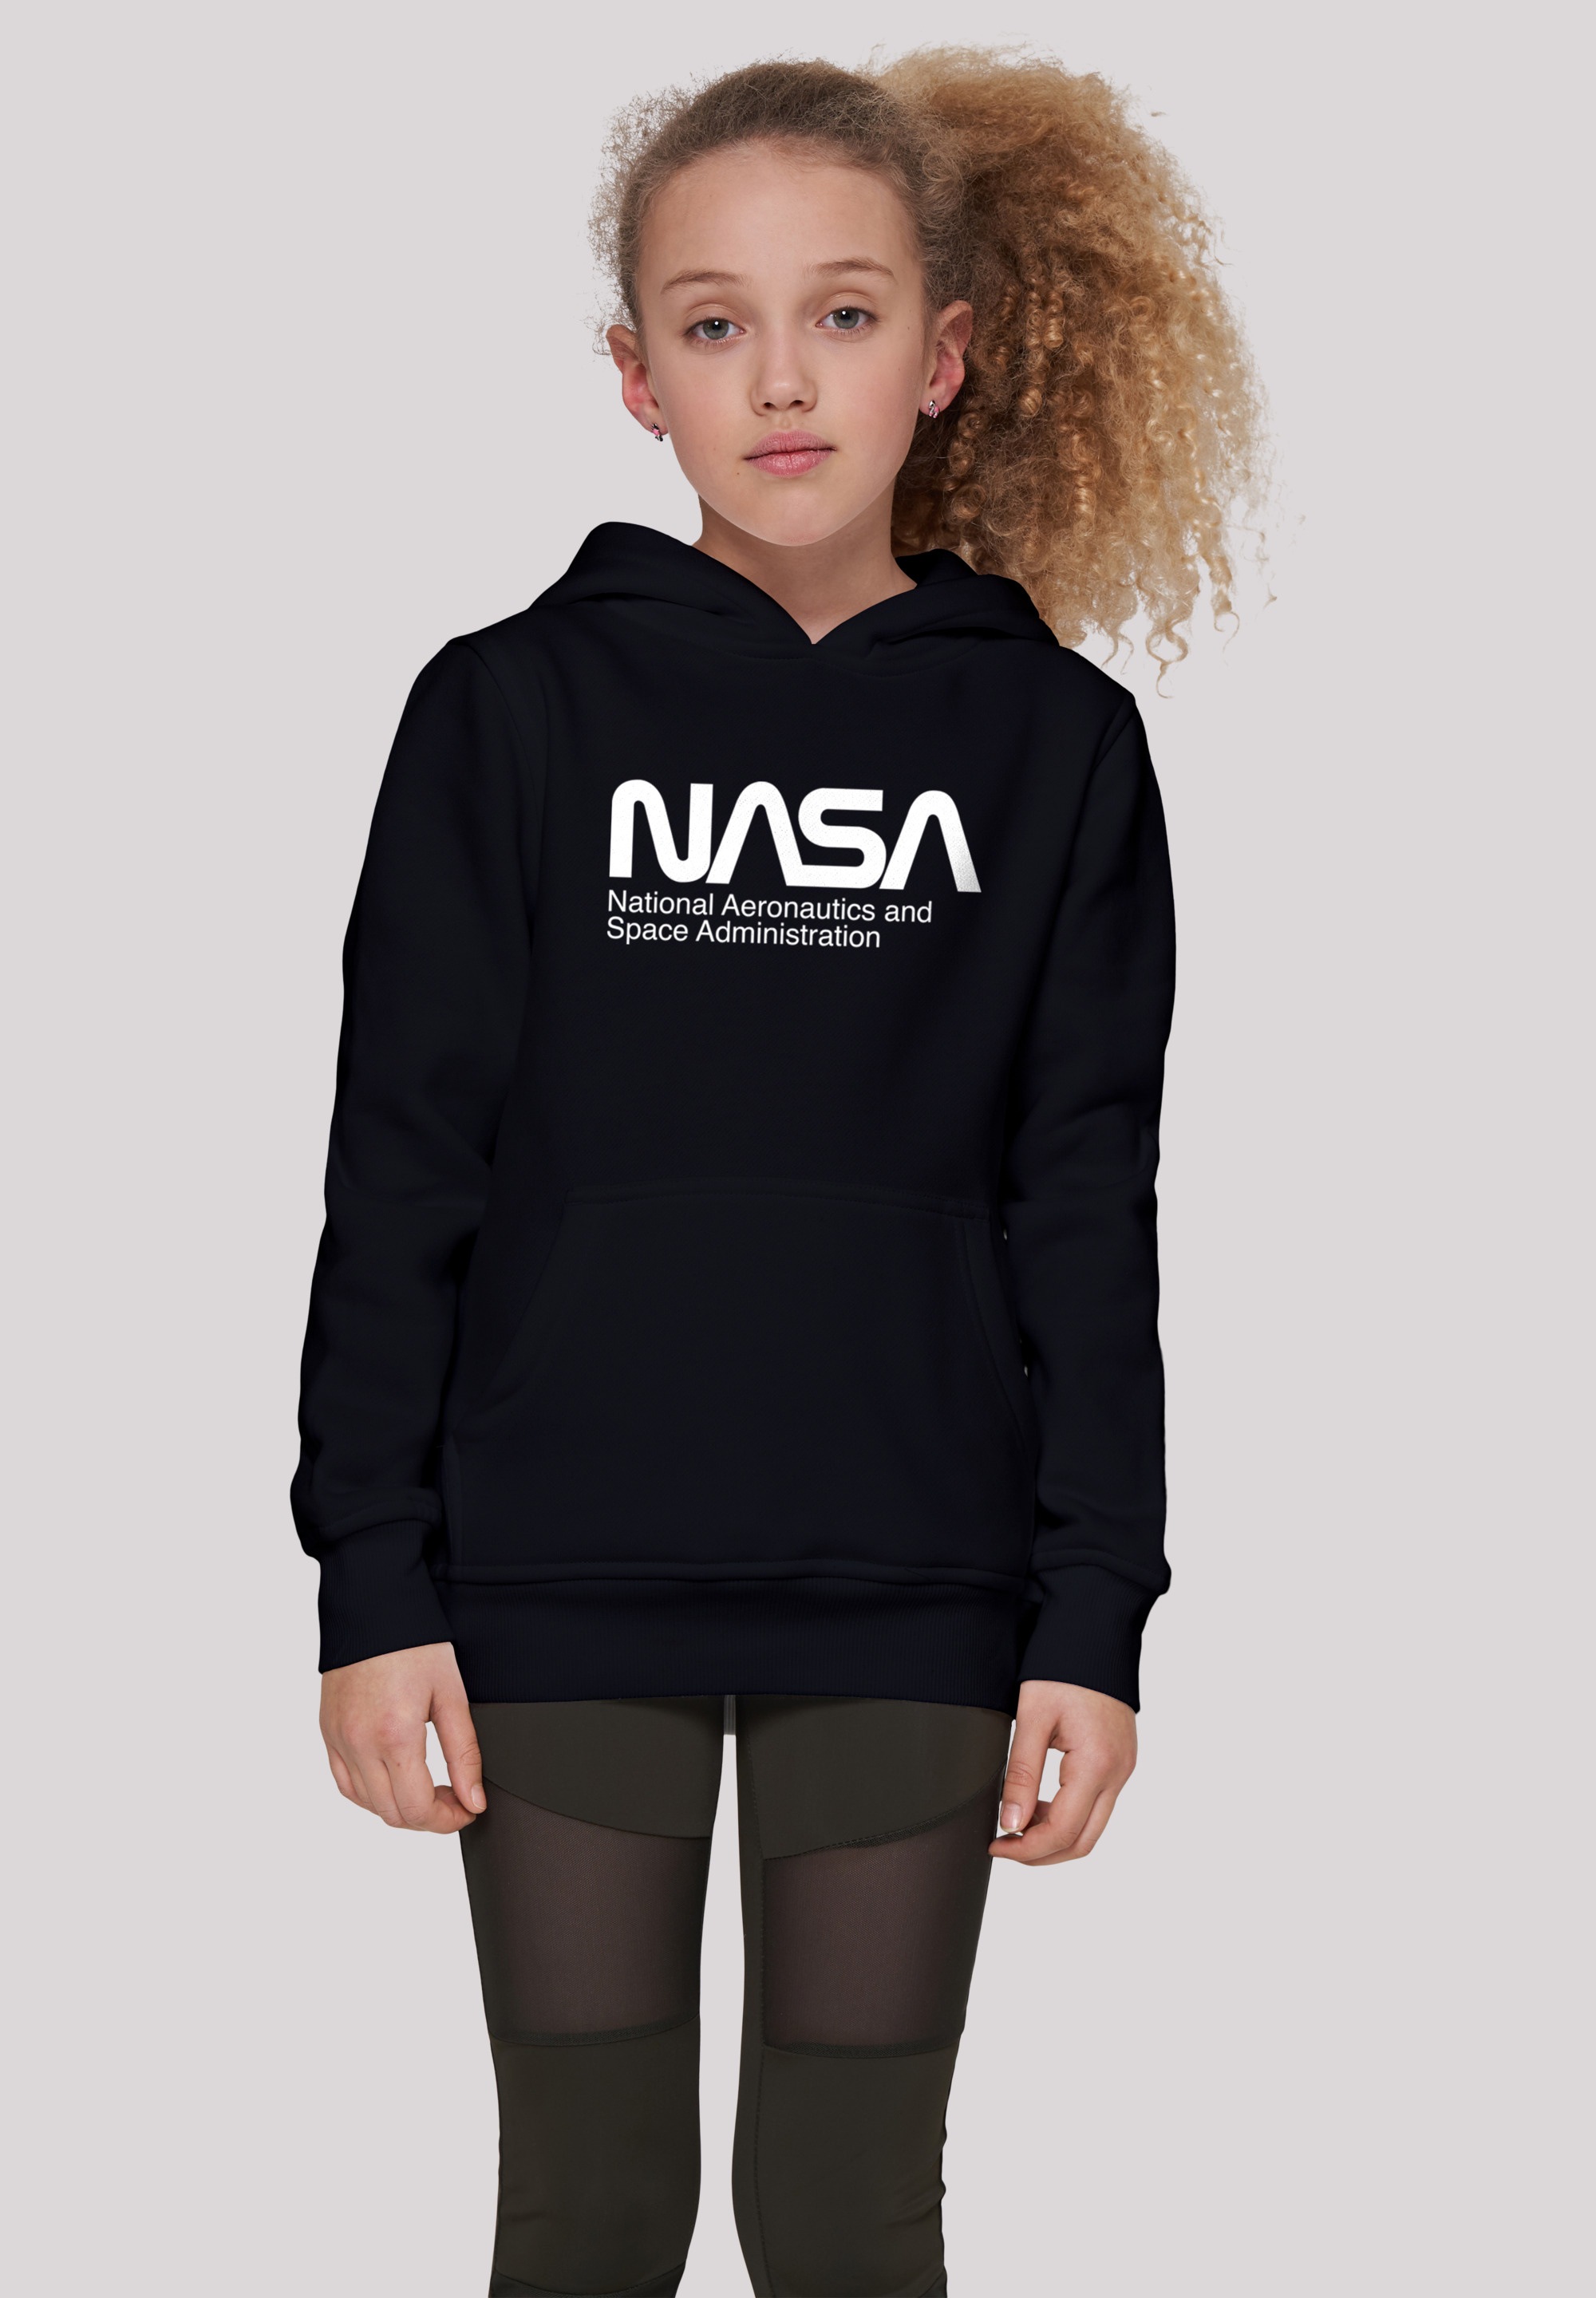 | Kinder,Premium Aeronautics BAUR And Black Sweatshirt F4NT4STIC »NASA Unisex Merch,Jungen,Mädchen,Bedruckt Space«, Friday